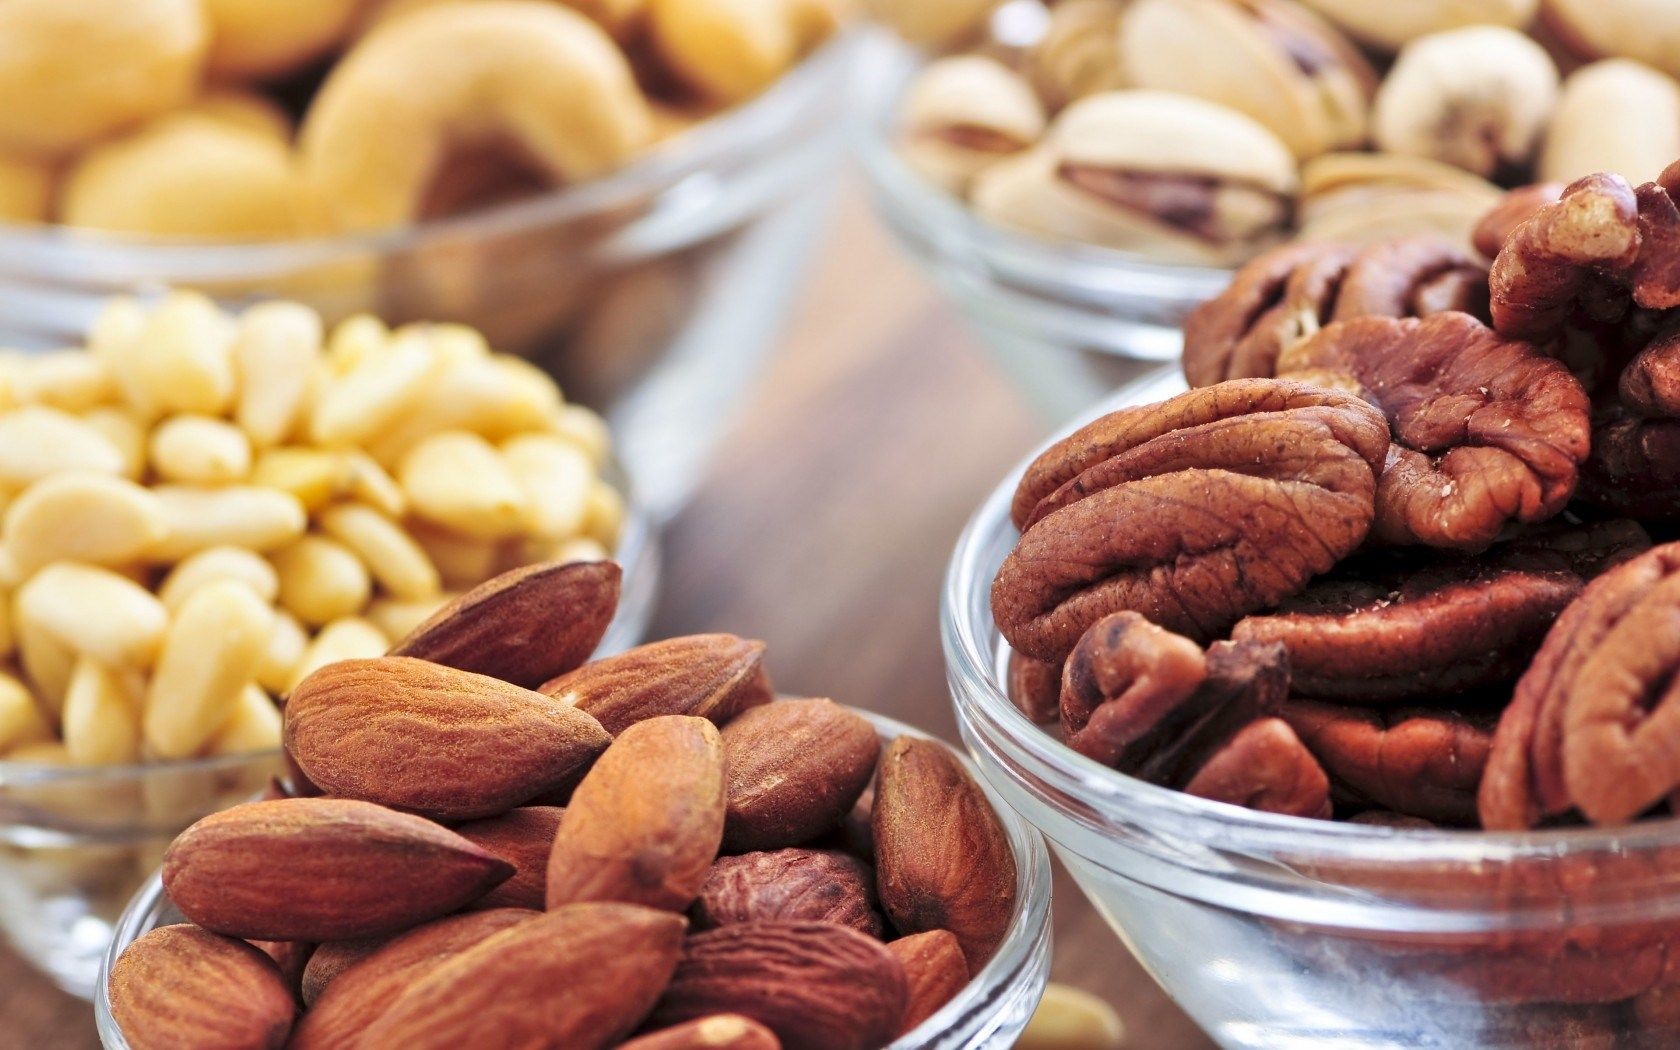 HD wallpaper, Food, Walnuts, Nuts, Almonds, Peanuts